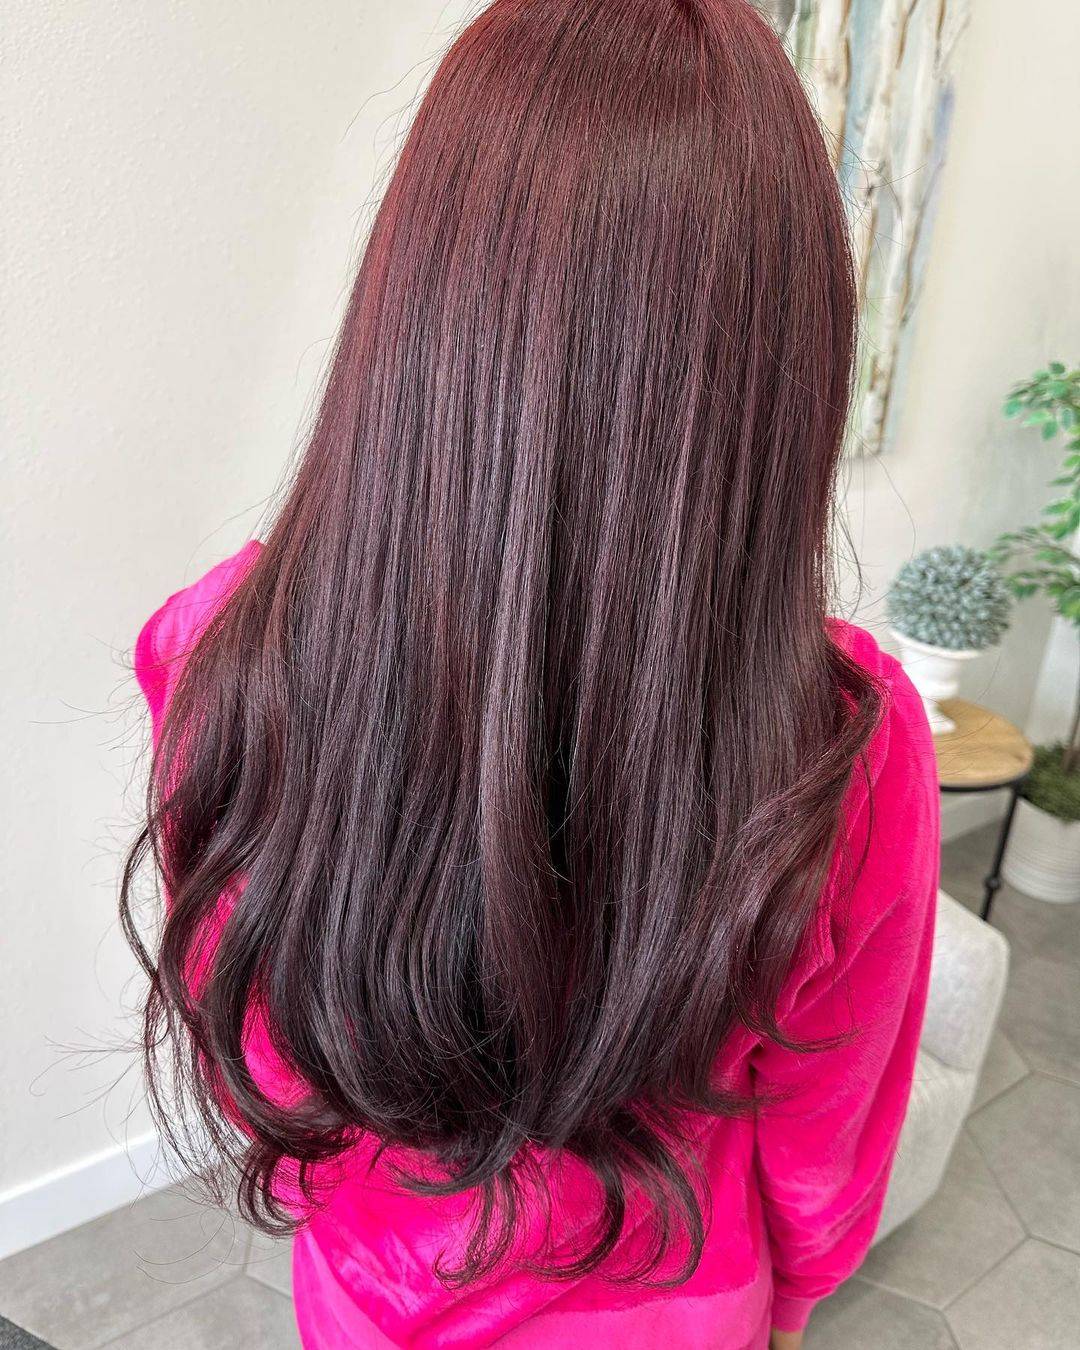 Burgundy hair color 390 burgundy hair color | burgundy hair color for women | burgundy hair color highlights Burgundy Hair Color